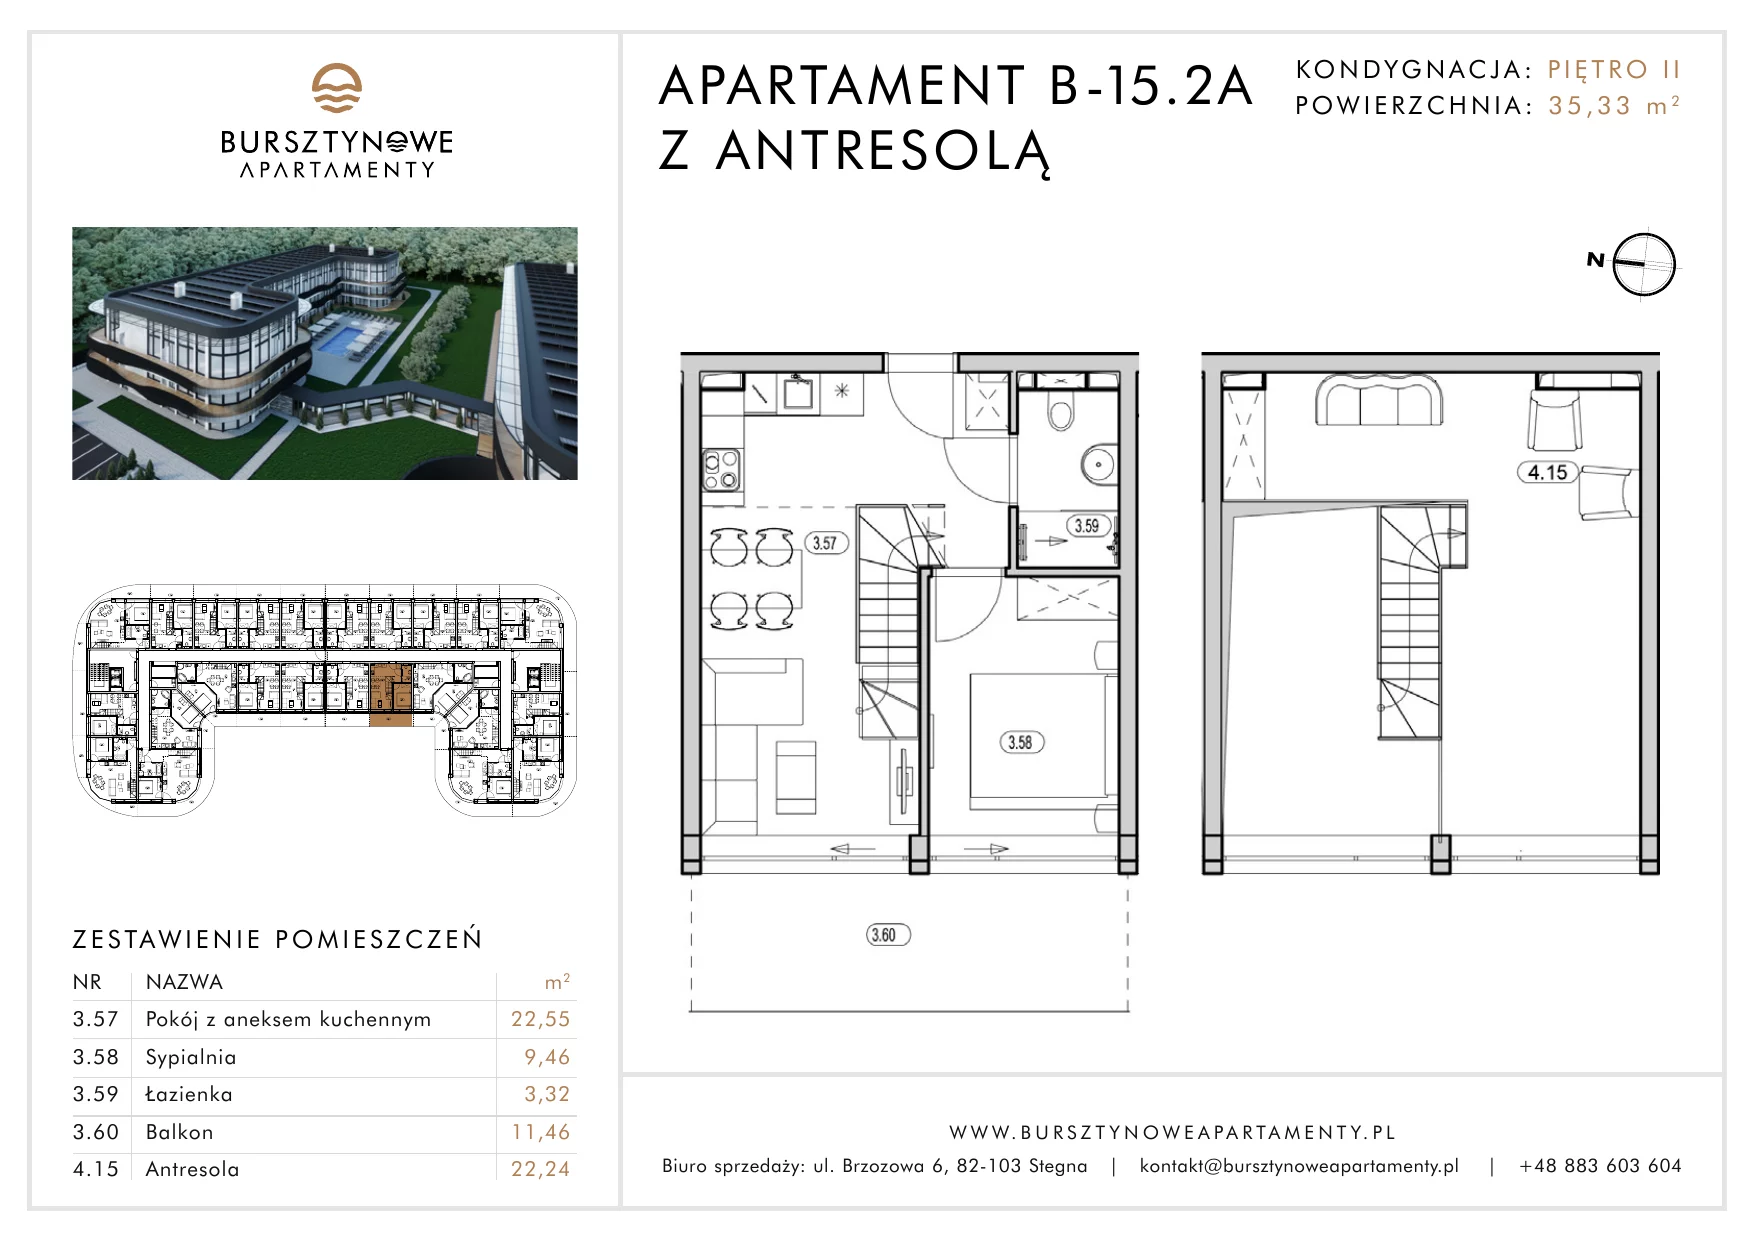 Apartament inwestycyjny 35,33 m², piętro 2, oferta nr B-15.2A, Bursztynowe Apartamenty, Stegna, ul. Brzozowa 6